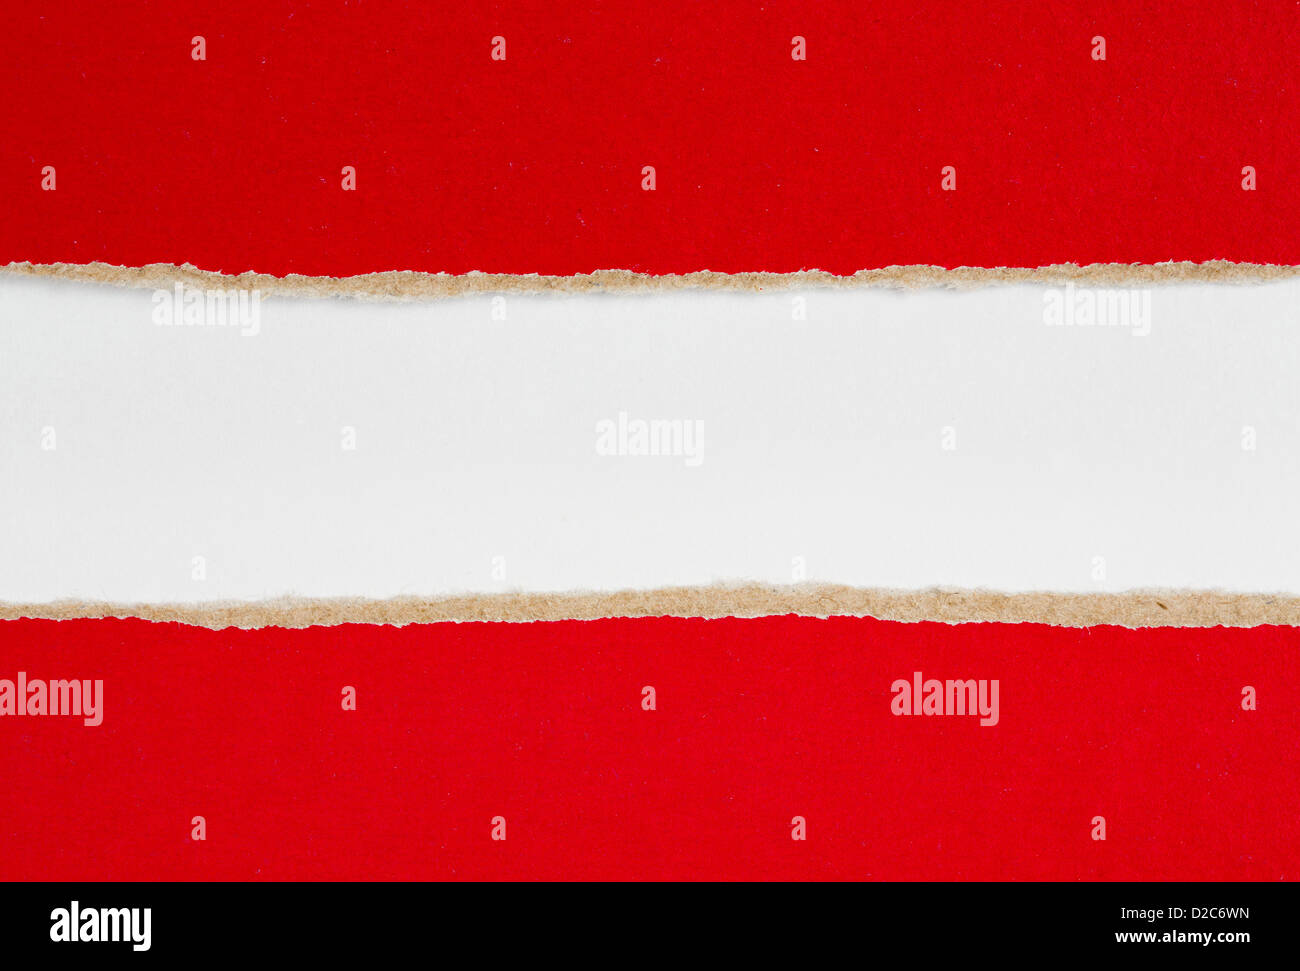 Rosso di carta di cui è stato eseguito il rip su bianco Foto Stock